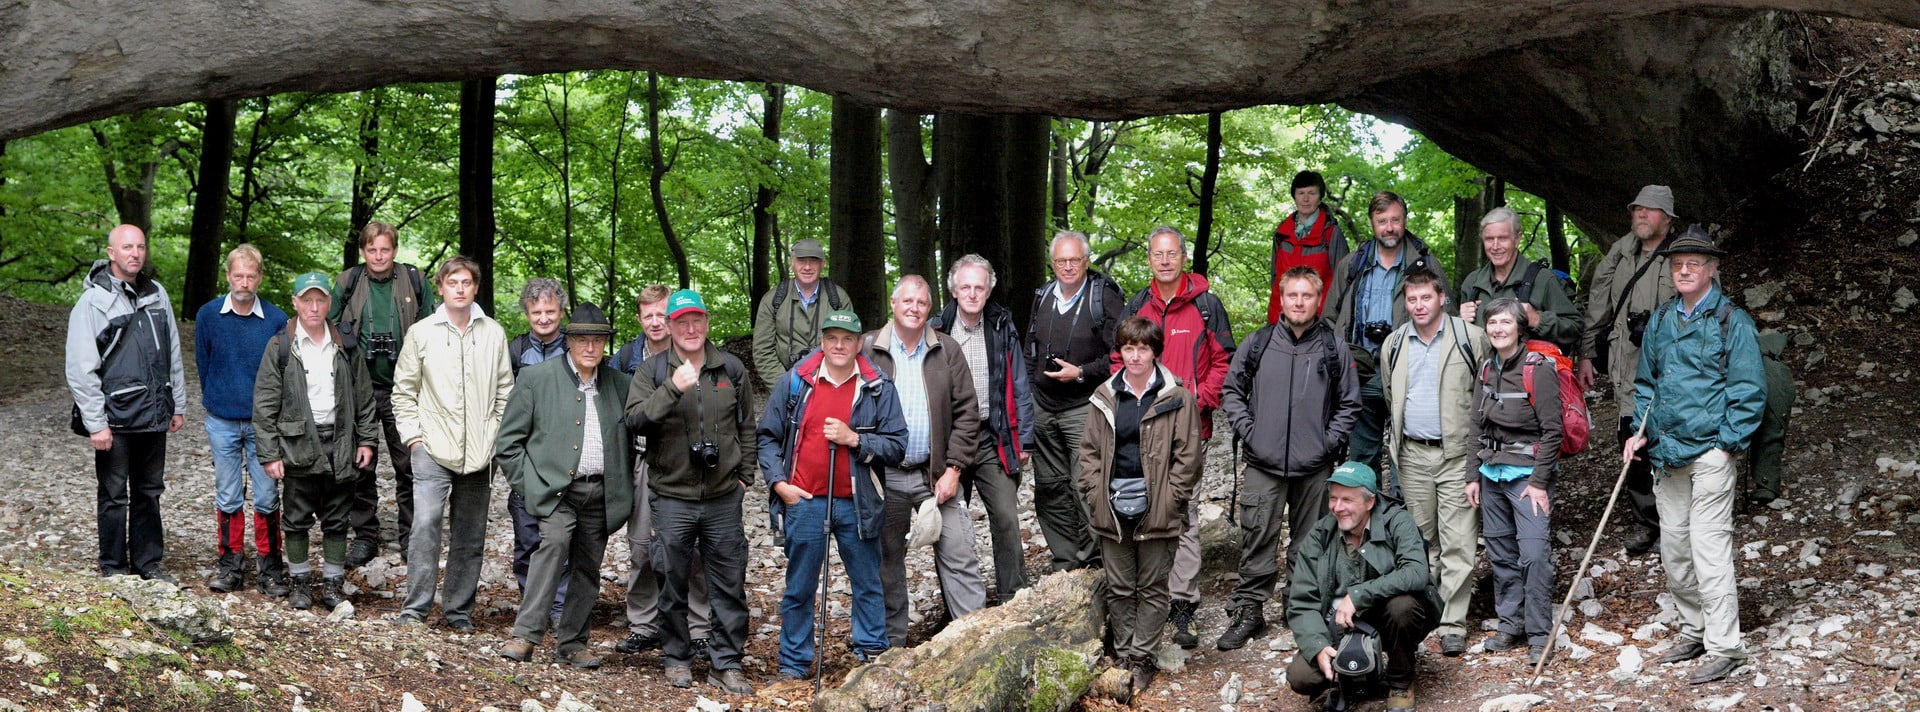 Austrian Excursion Group in Ukraine (2011)